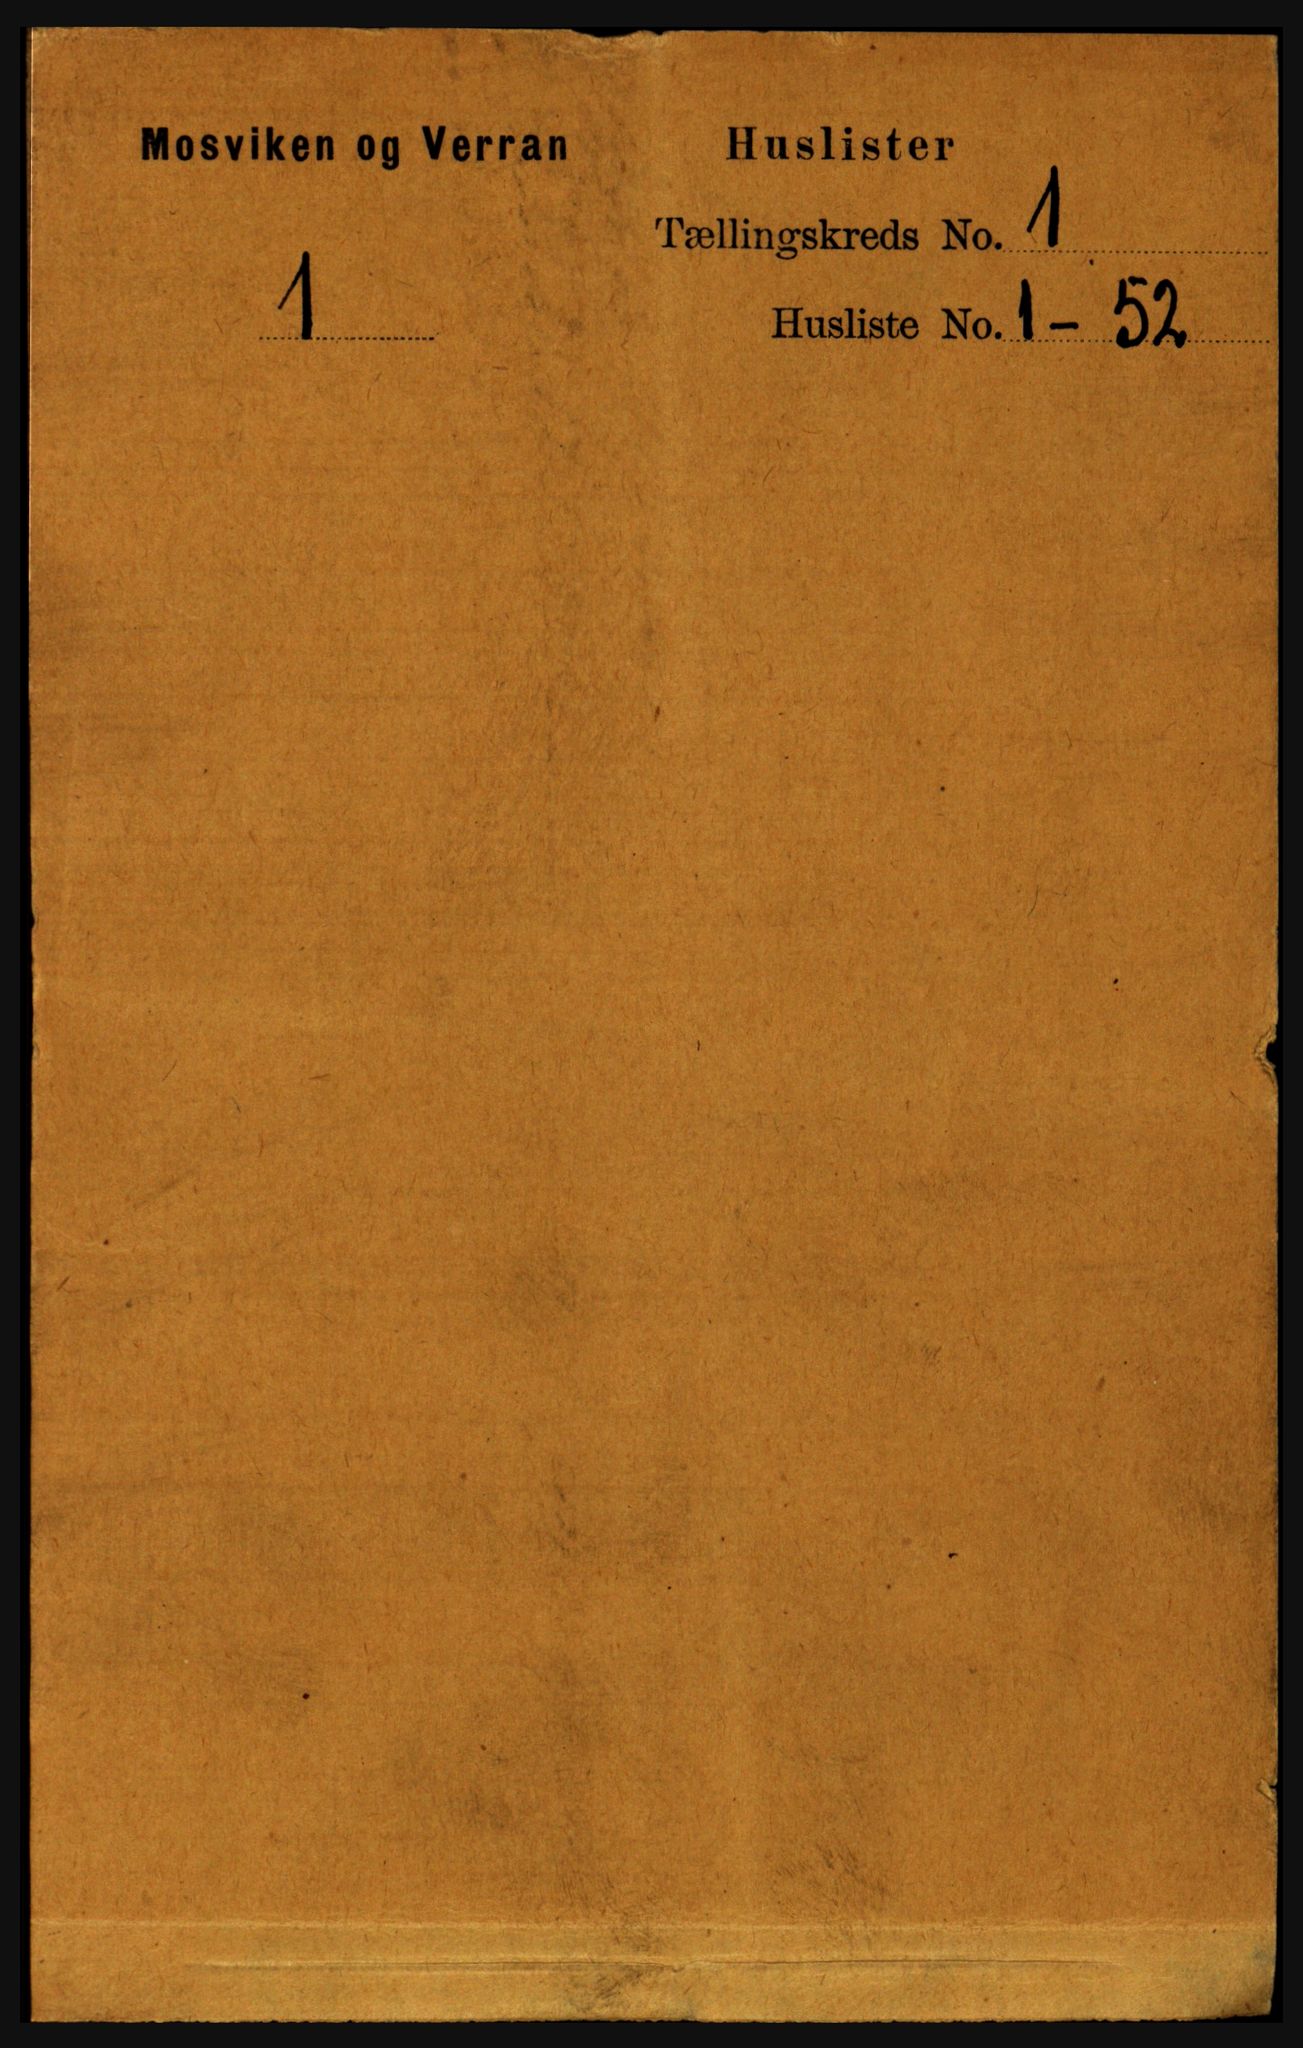 RA, Folketelling 1891 for 1723 Mosvik og Verran herred, 1891, s. 22